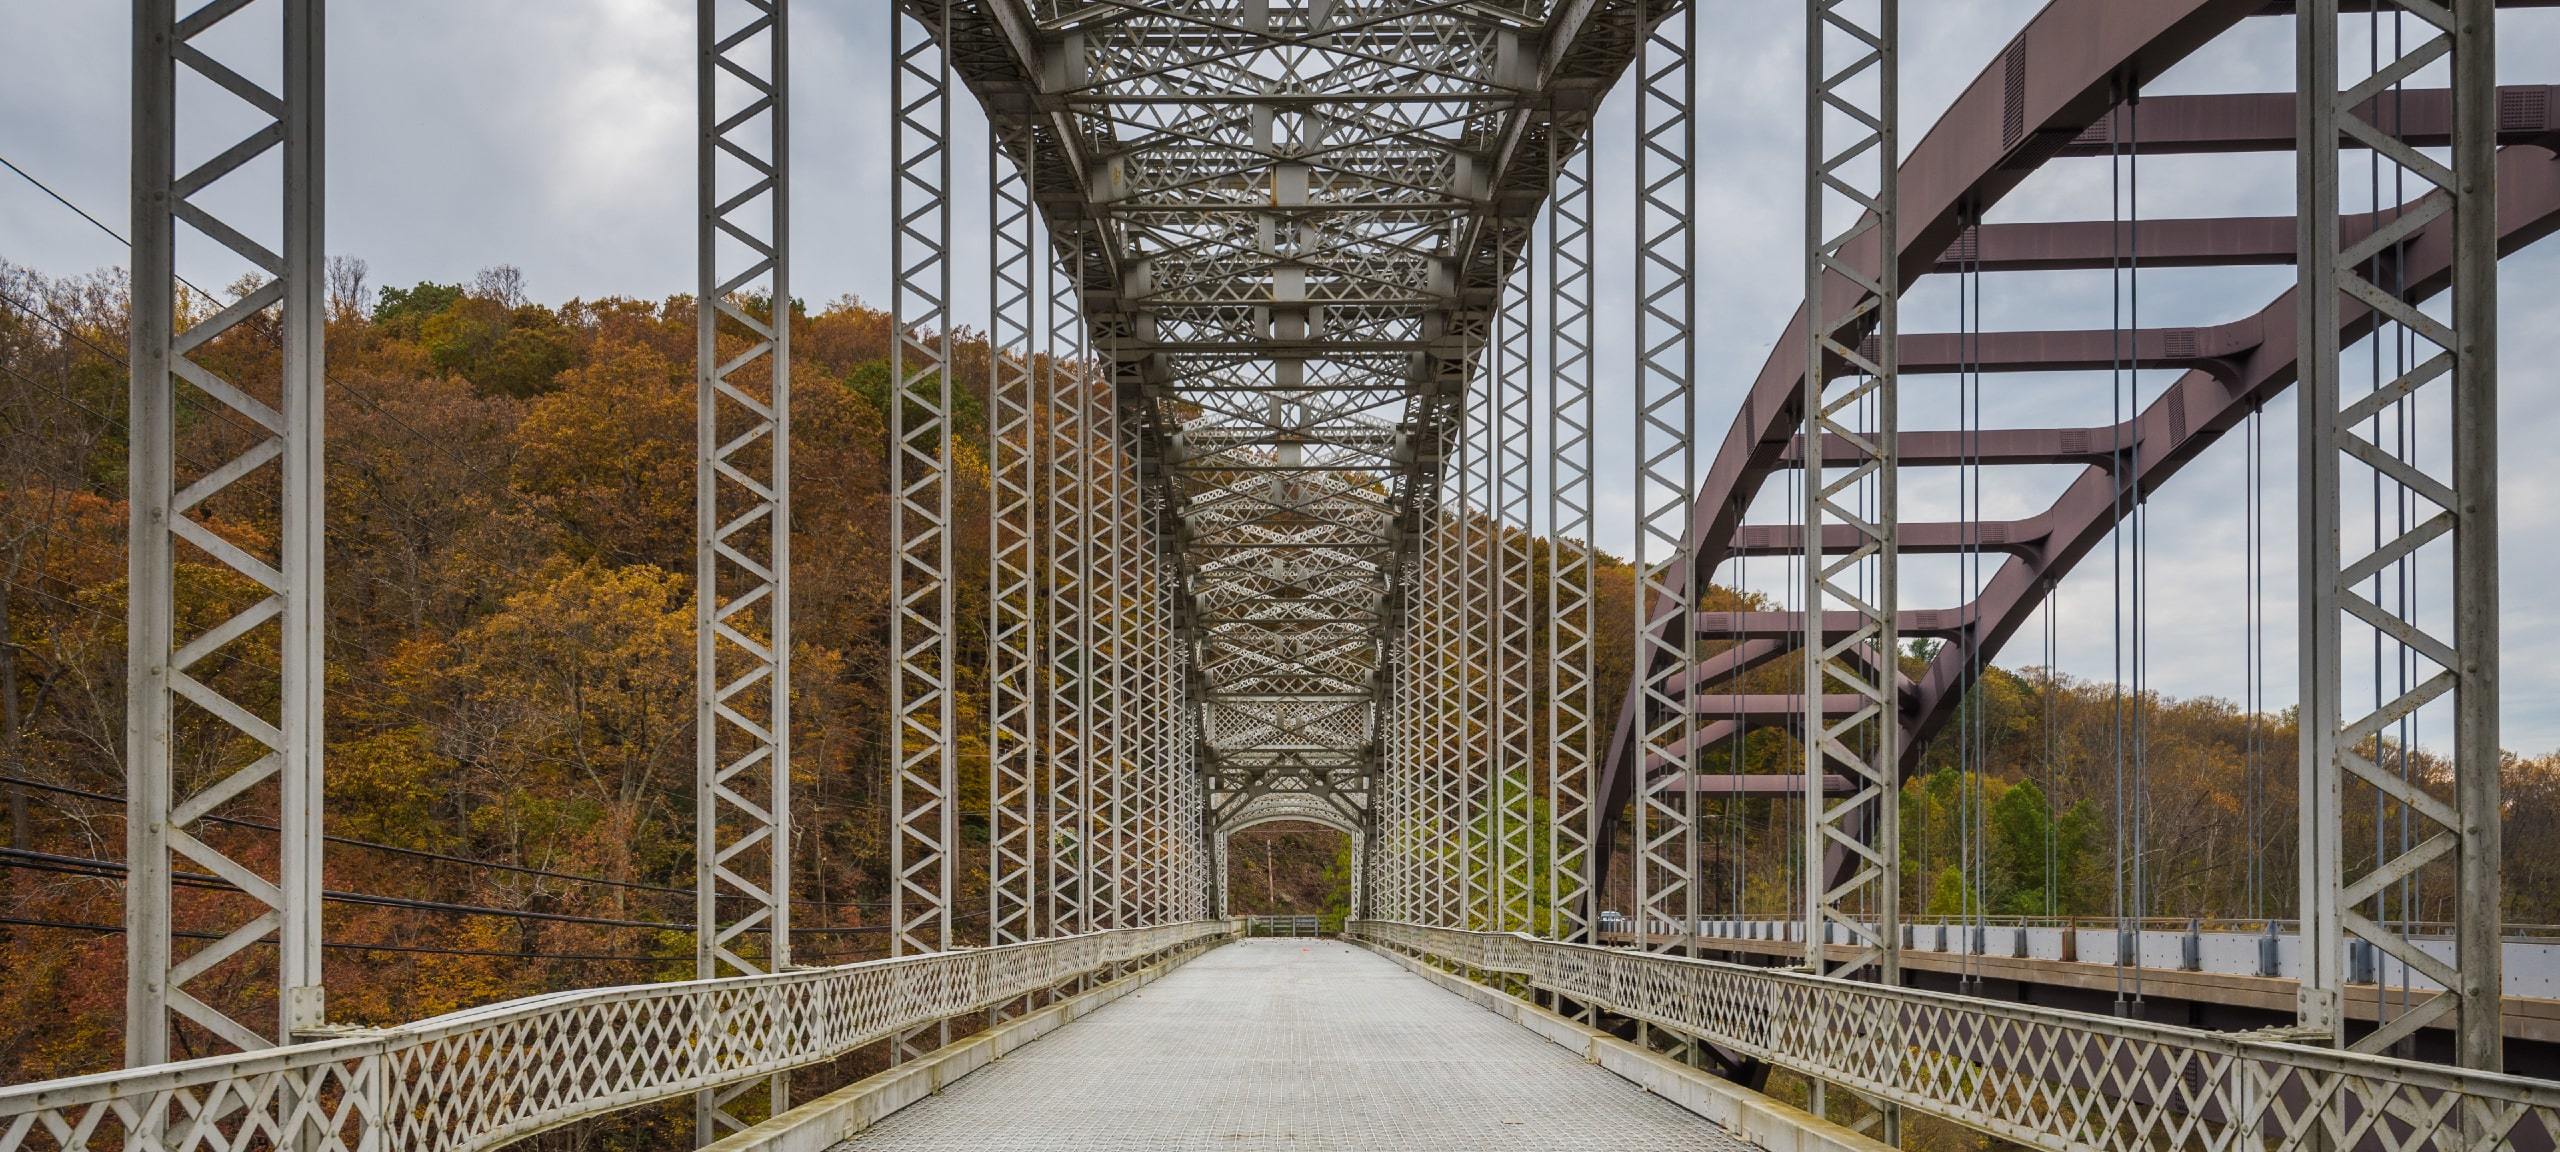 Bridge at Loch Raven Reservoir in Cockeysville, Maryland